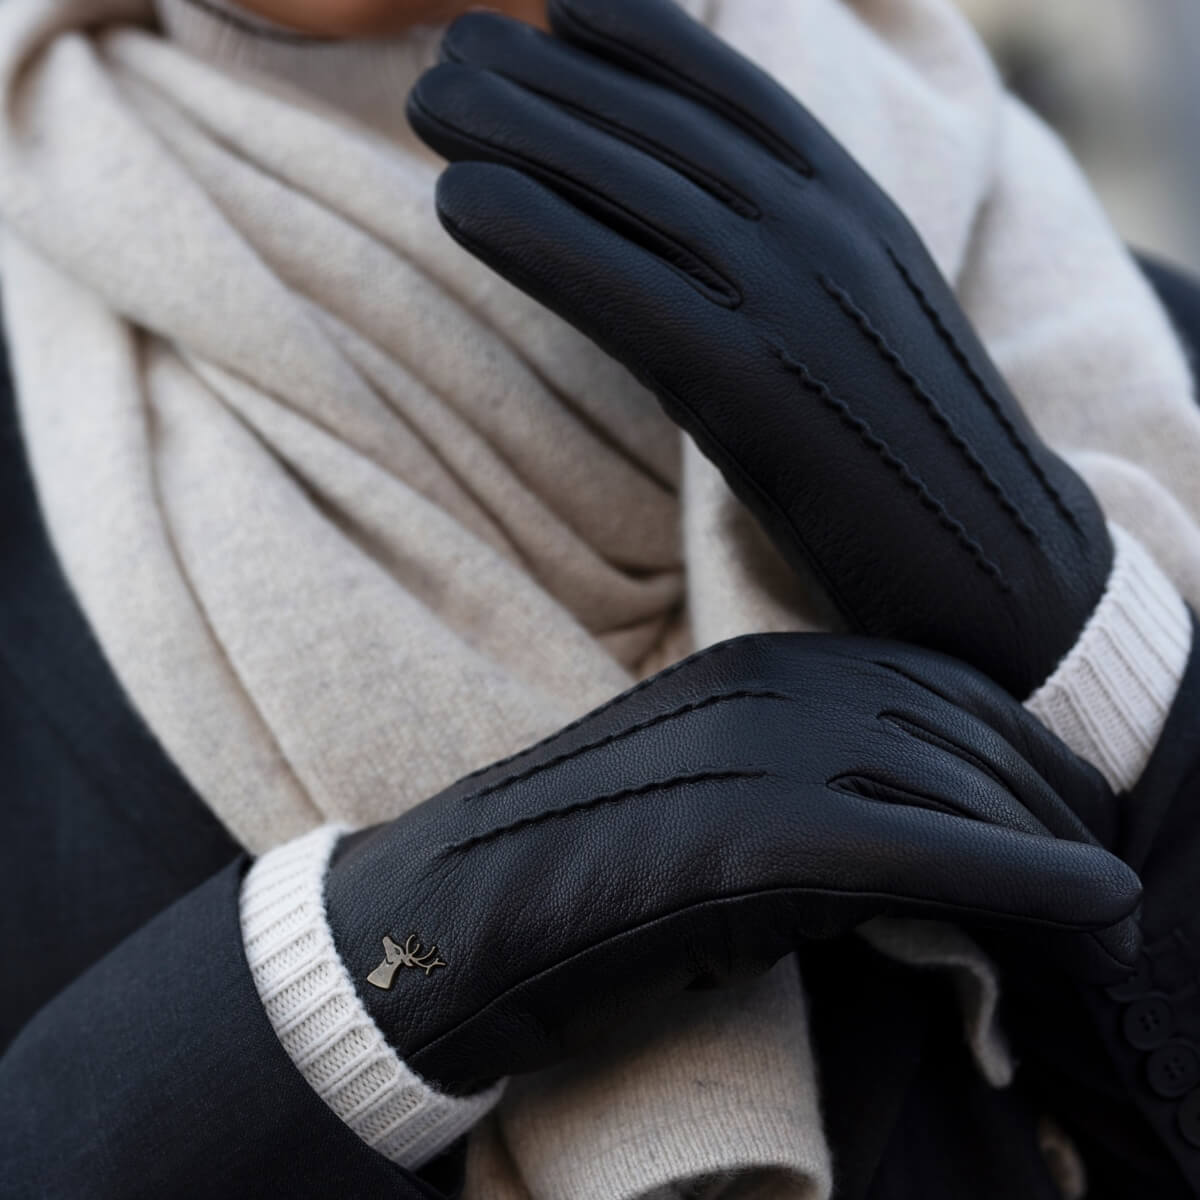 Gant Femme Gants Hiver Dames Écran Tactile Épaissi Poignet Mode Gants Dames  Cuir Hiver Noir Taille Unique